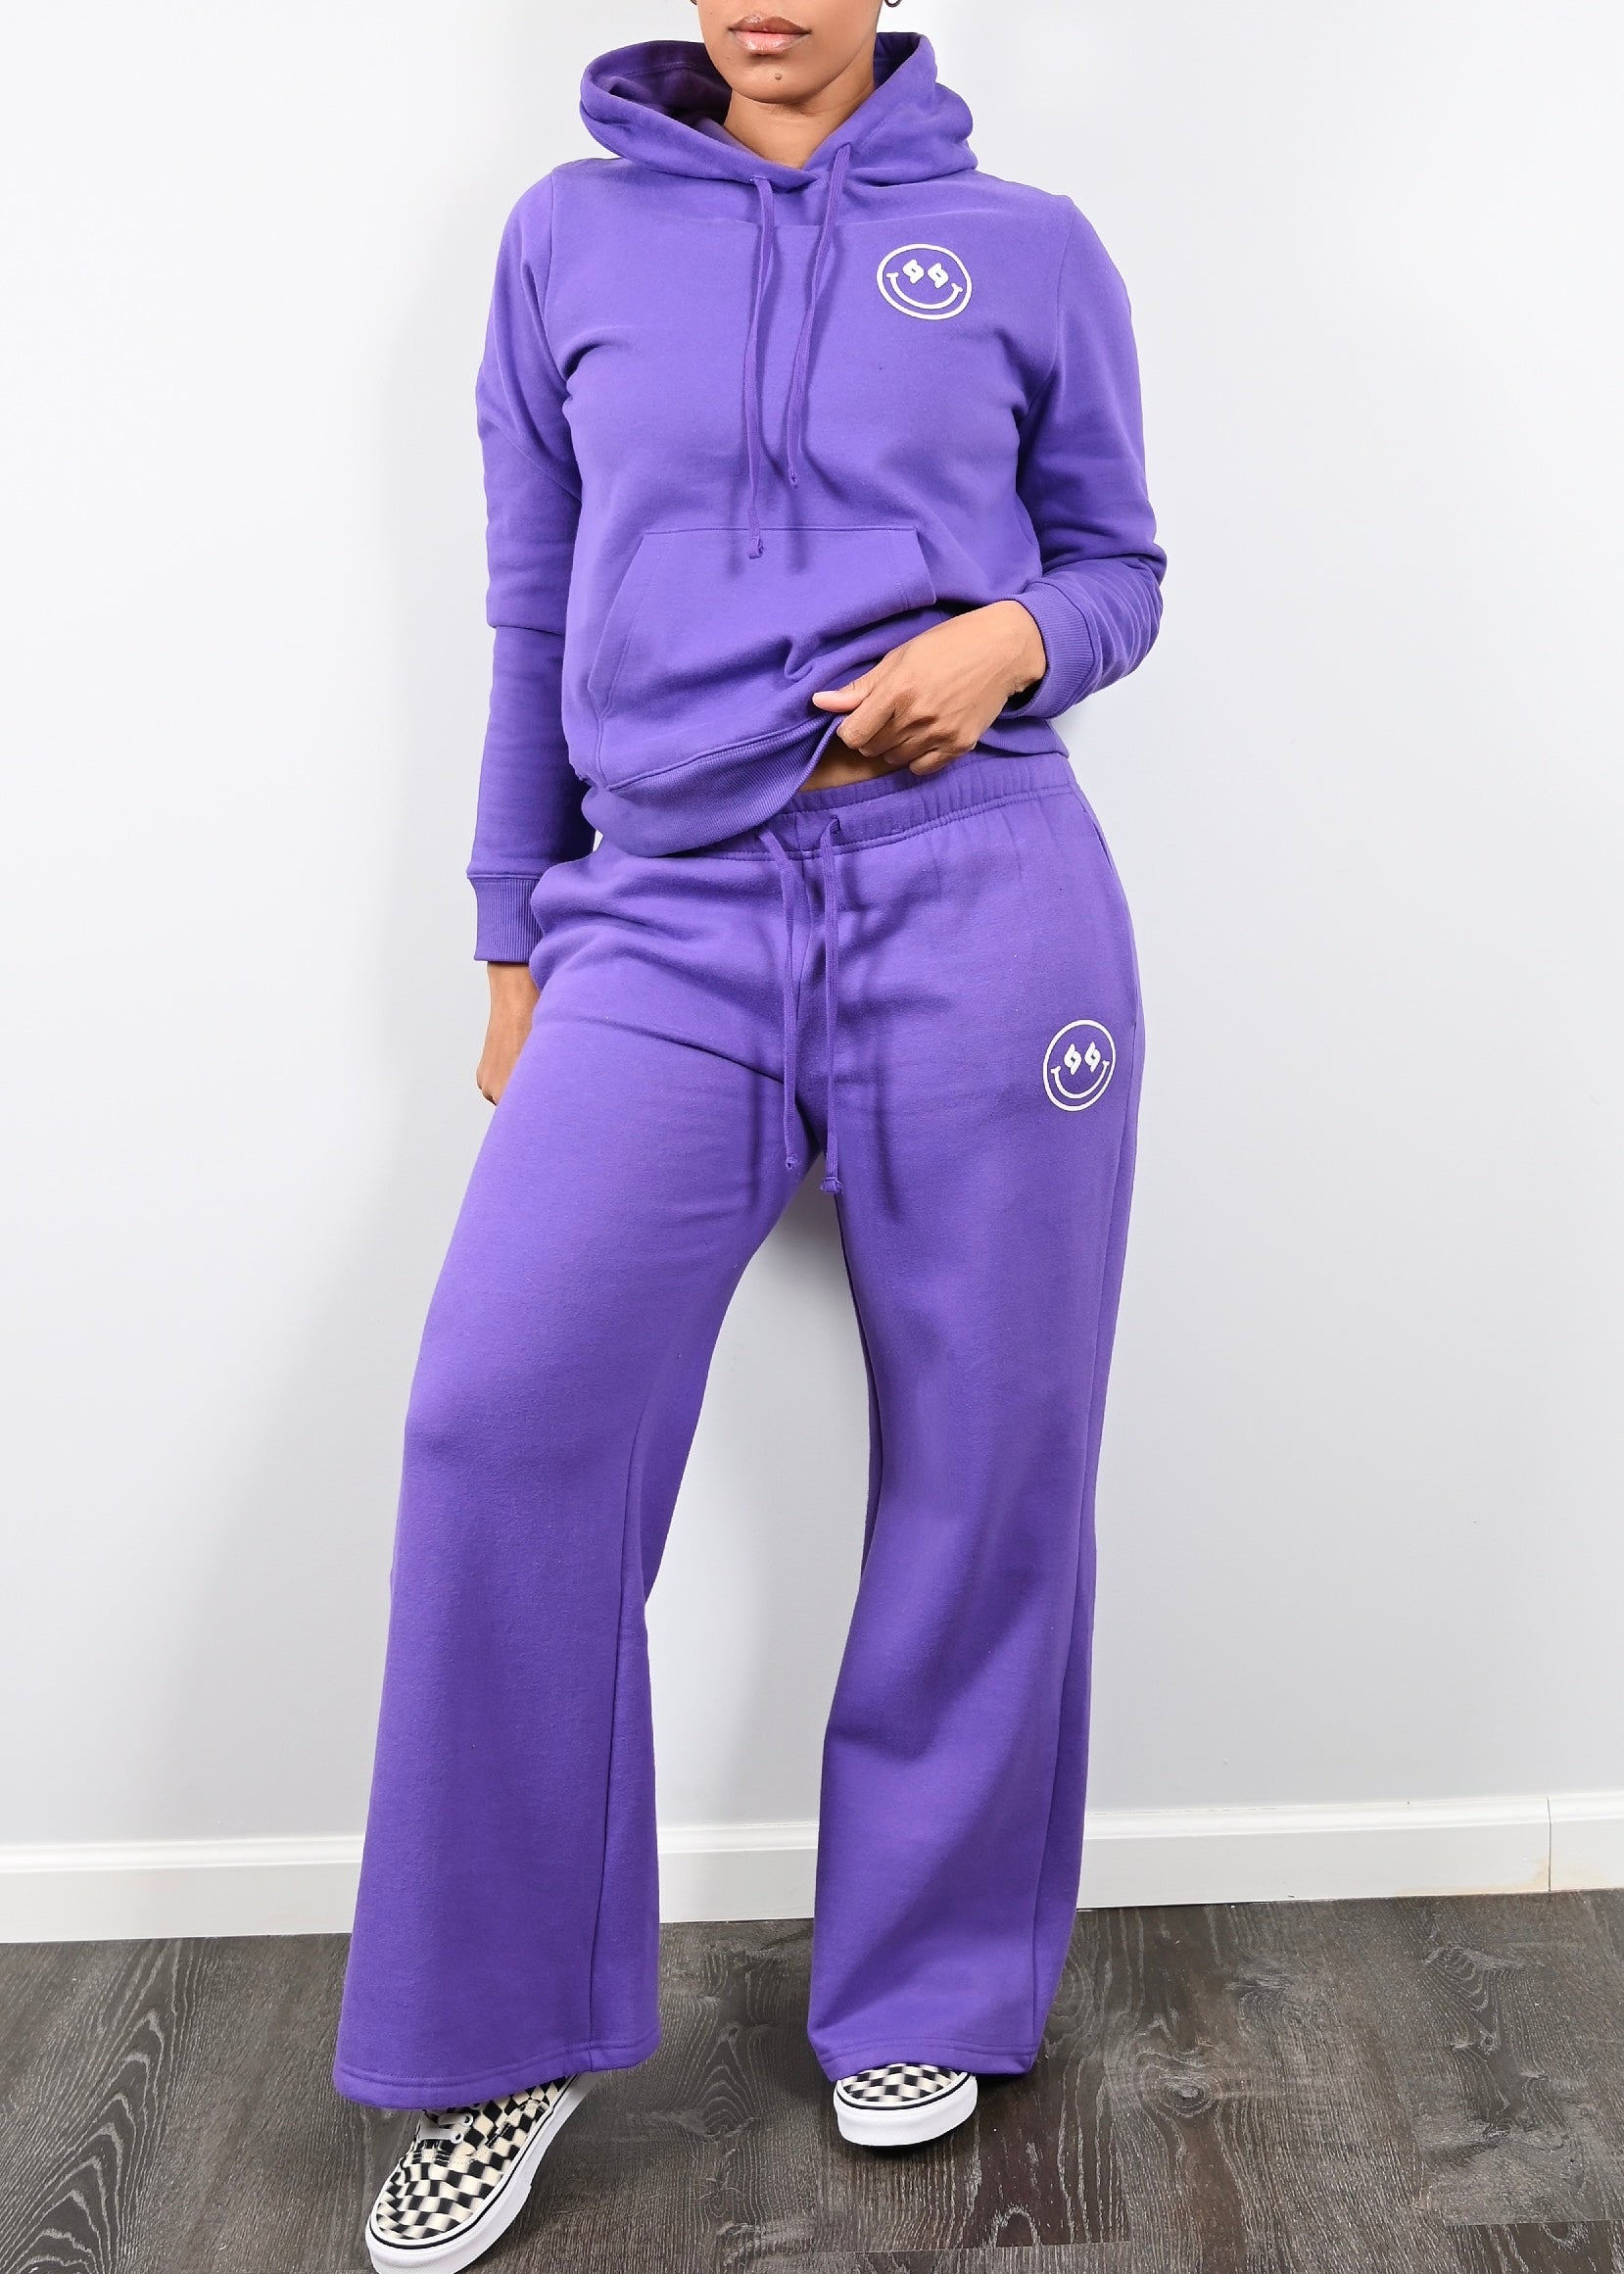 Exclusive Smiley Face Fleece Cargo Sweatsuit | Wisteria Purple